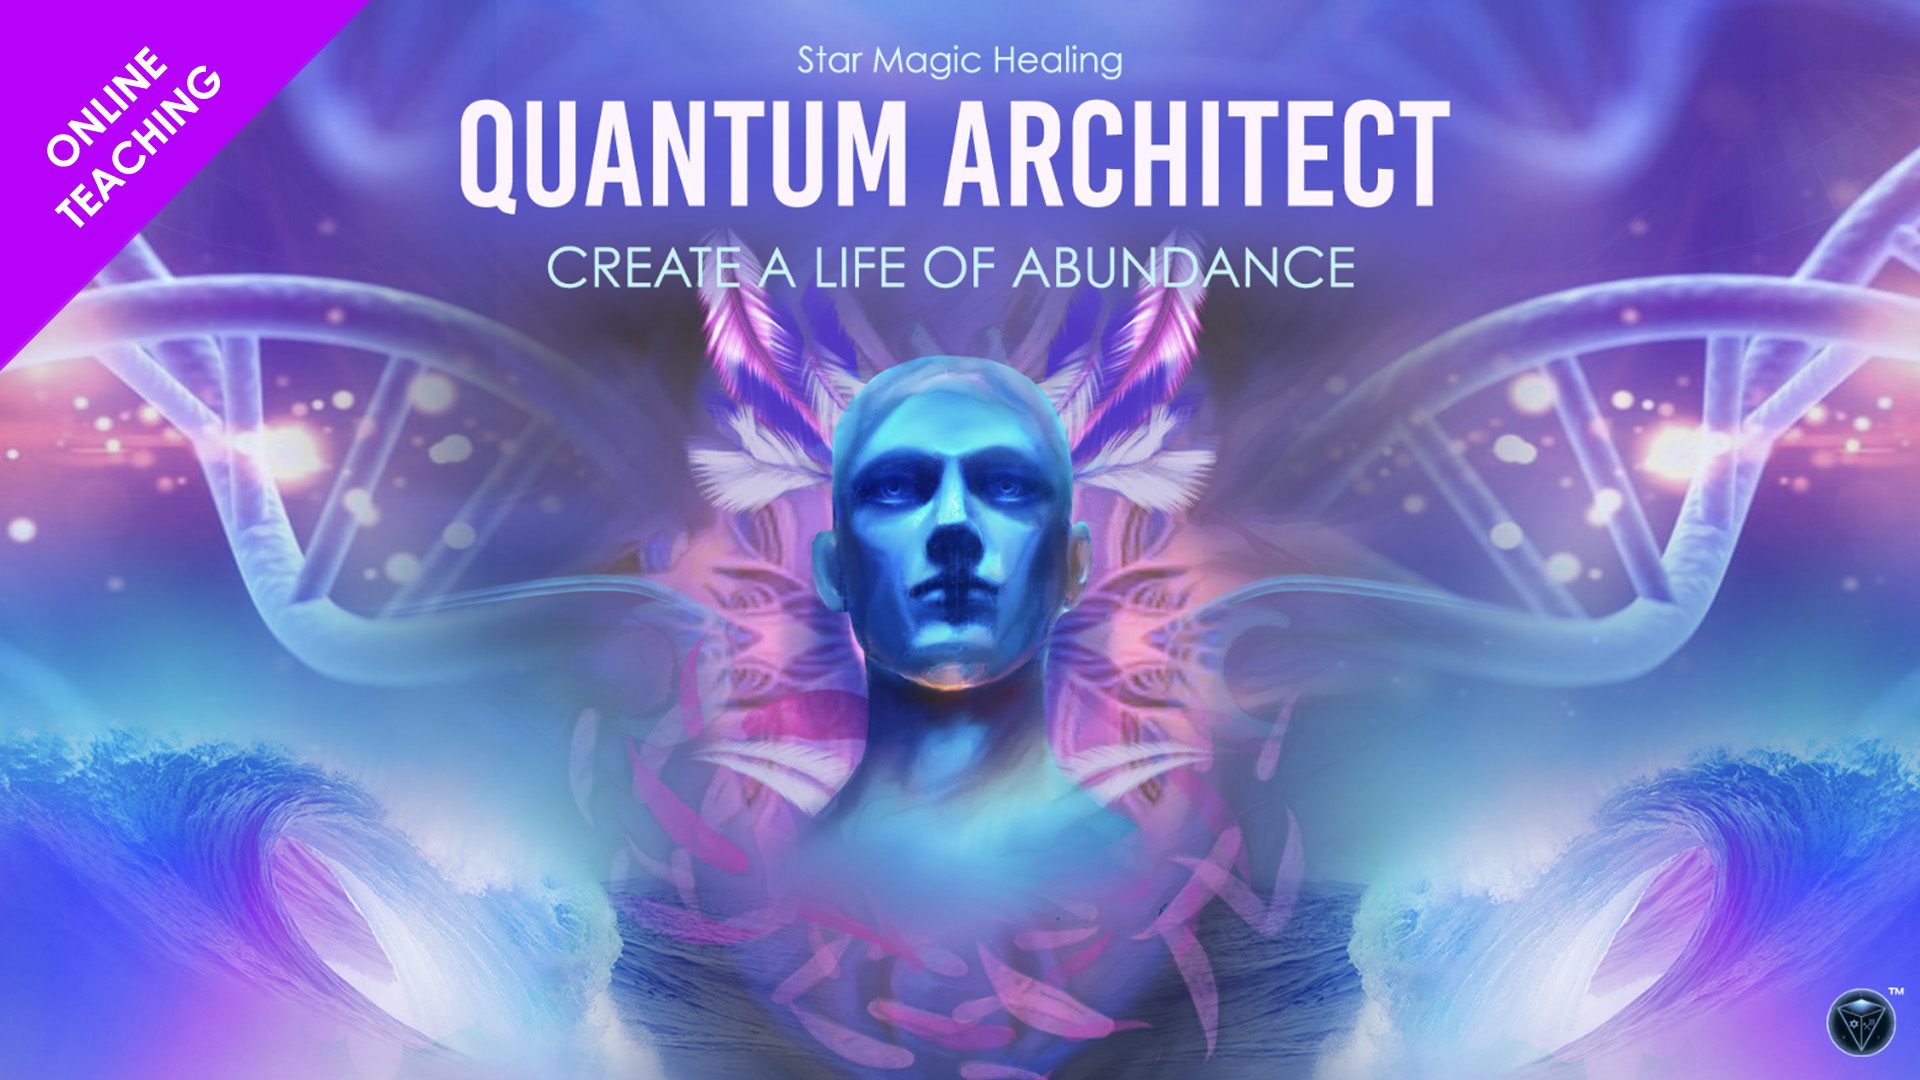 The Quantum Architect